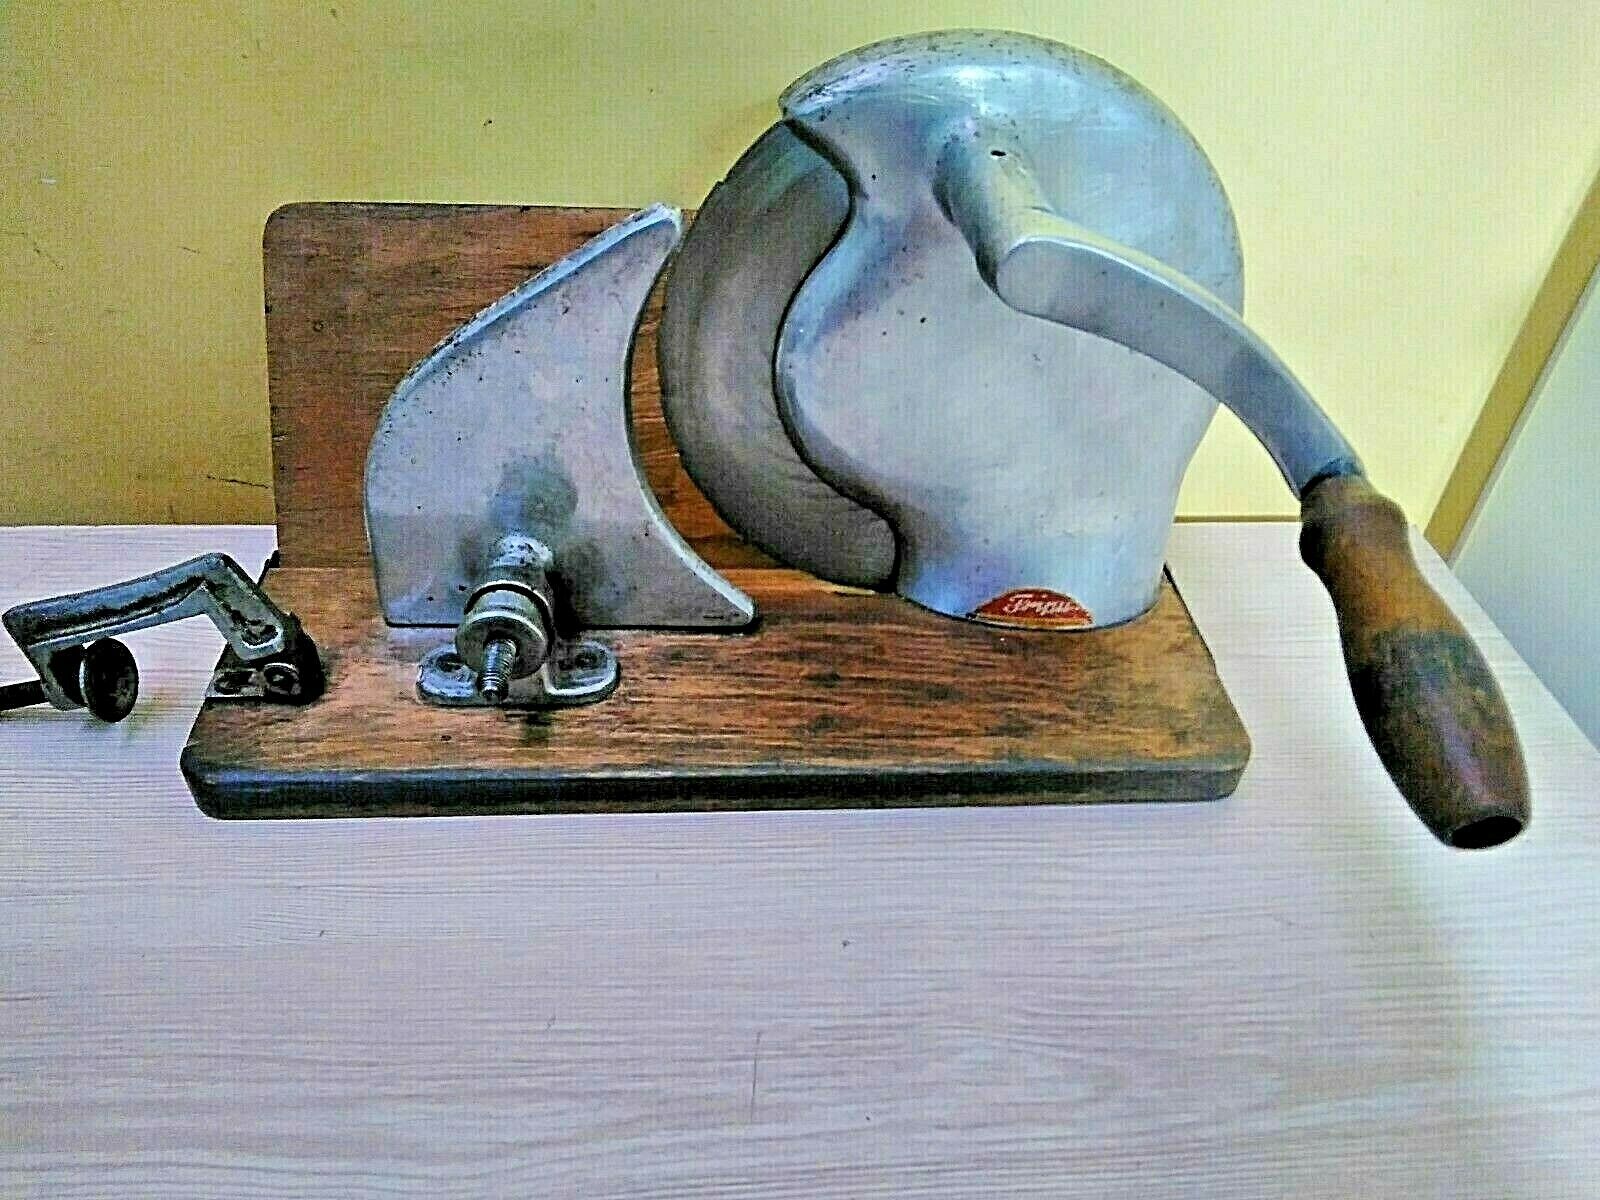 Rare Vintage kitchen slicer. good working condition. 1950-60. original